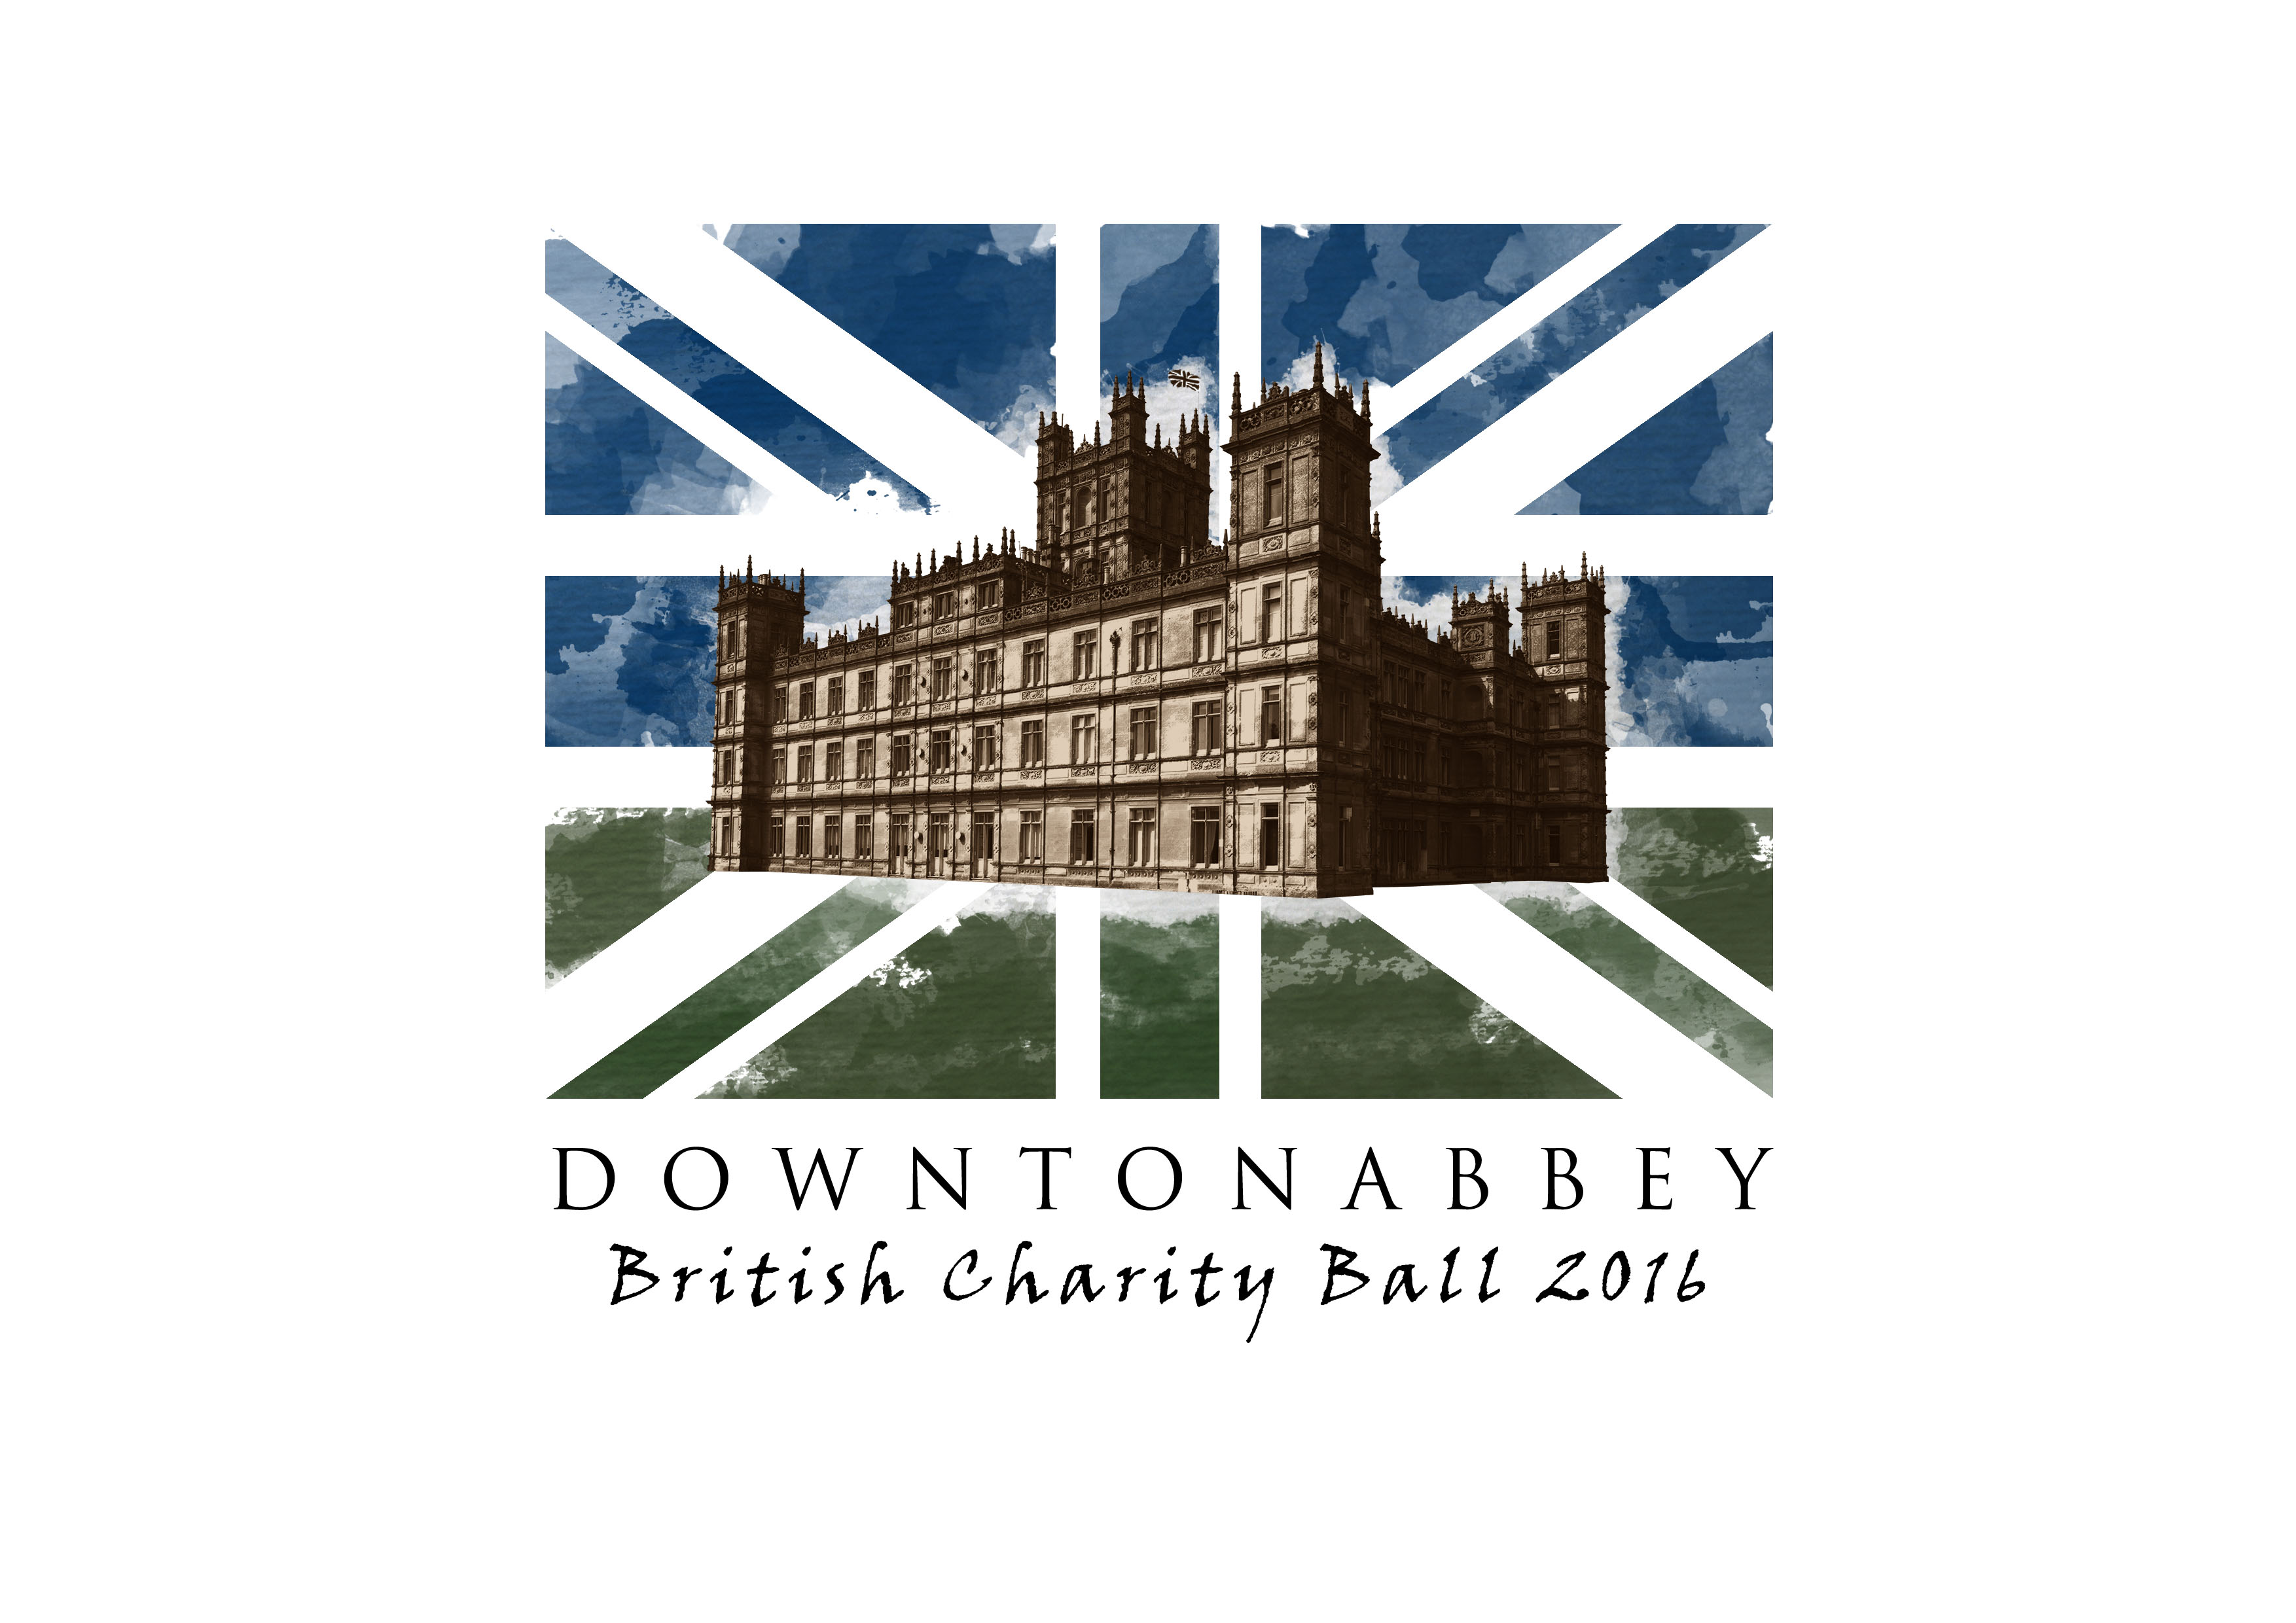 British Charity Ball 2016